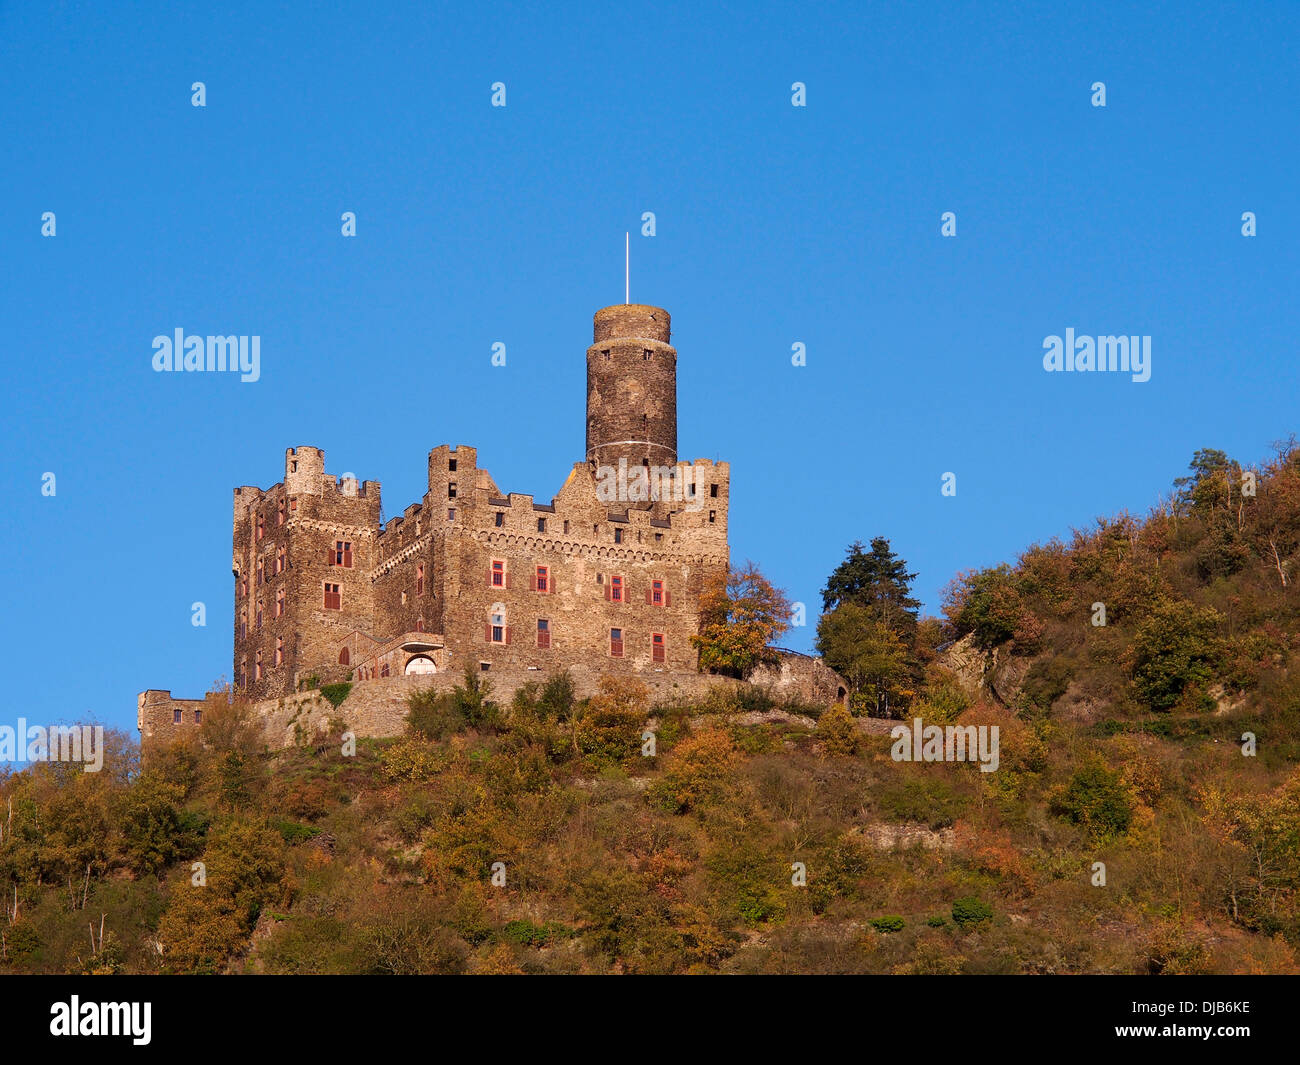 Castello nella valle del Reno, Germania, Foto Stock